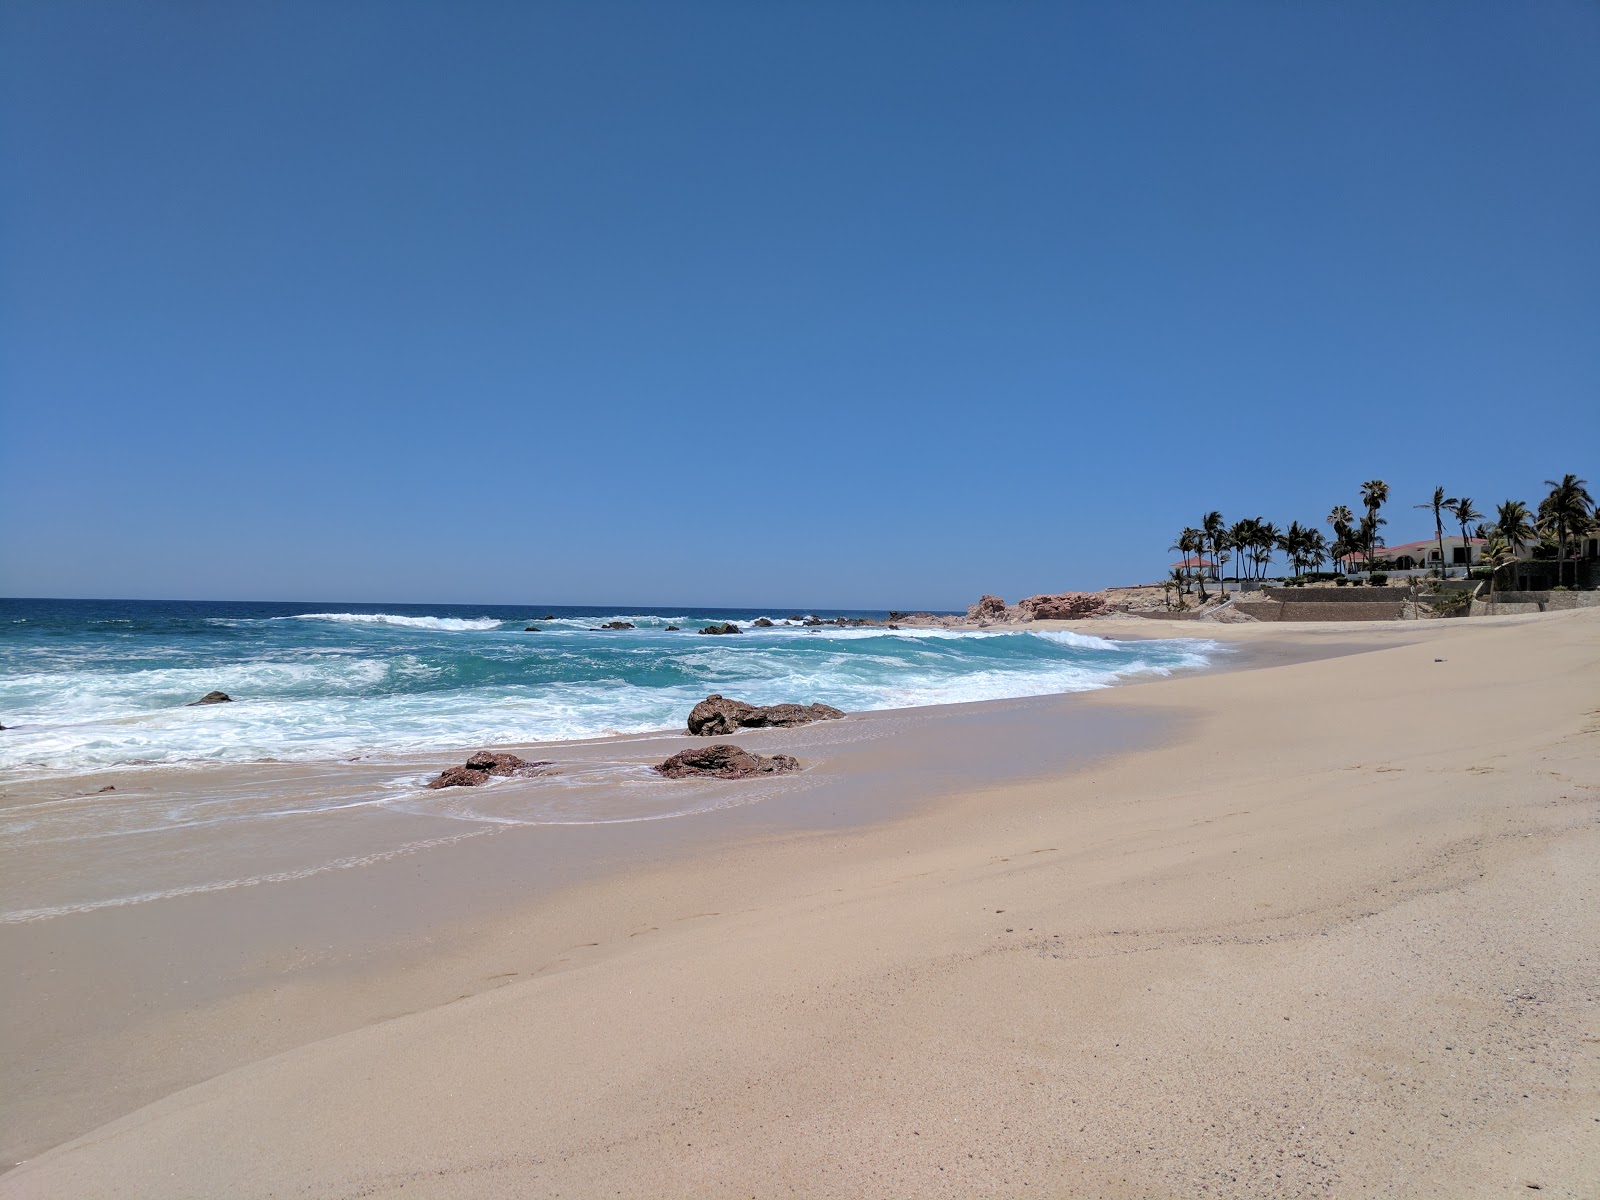 Playa Punta Bella II'in fotoğrafı parlak ince kum yüzey ile